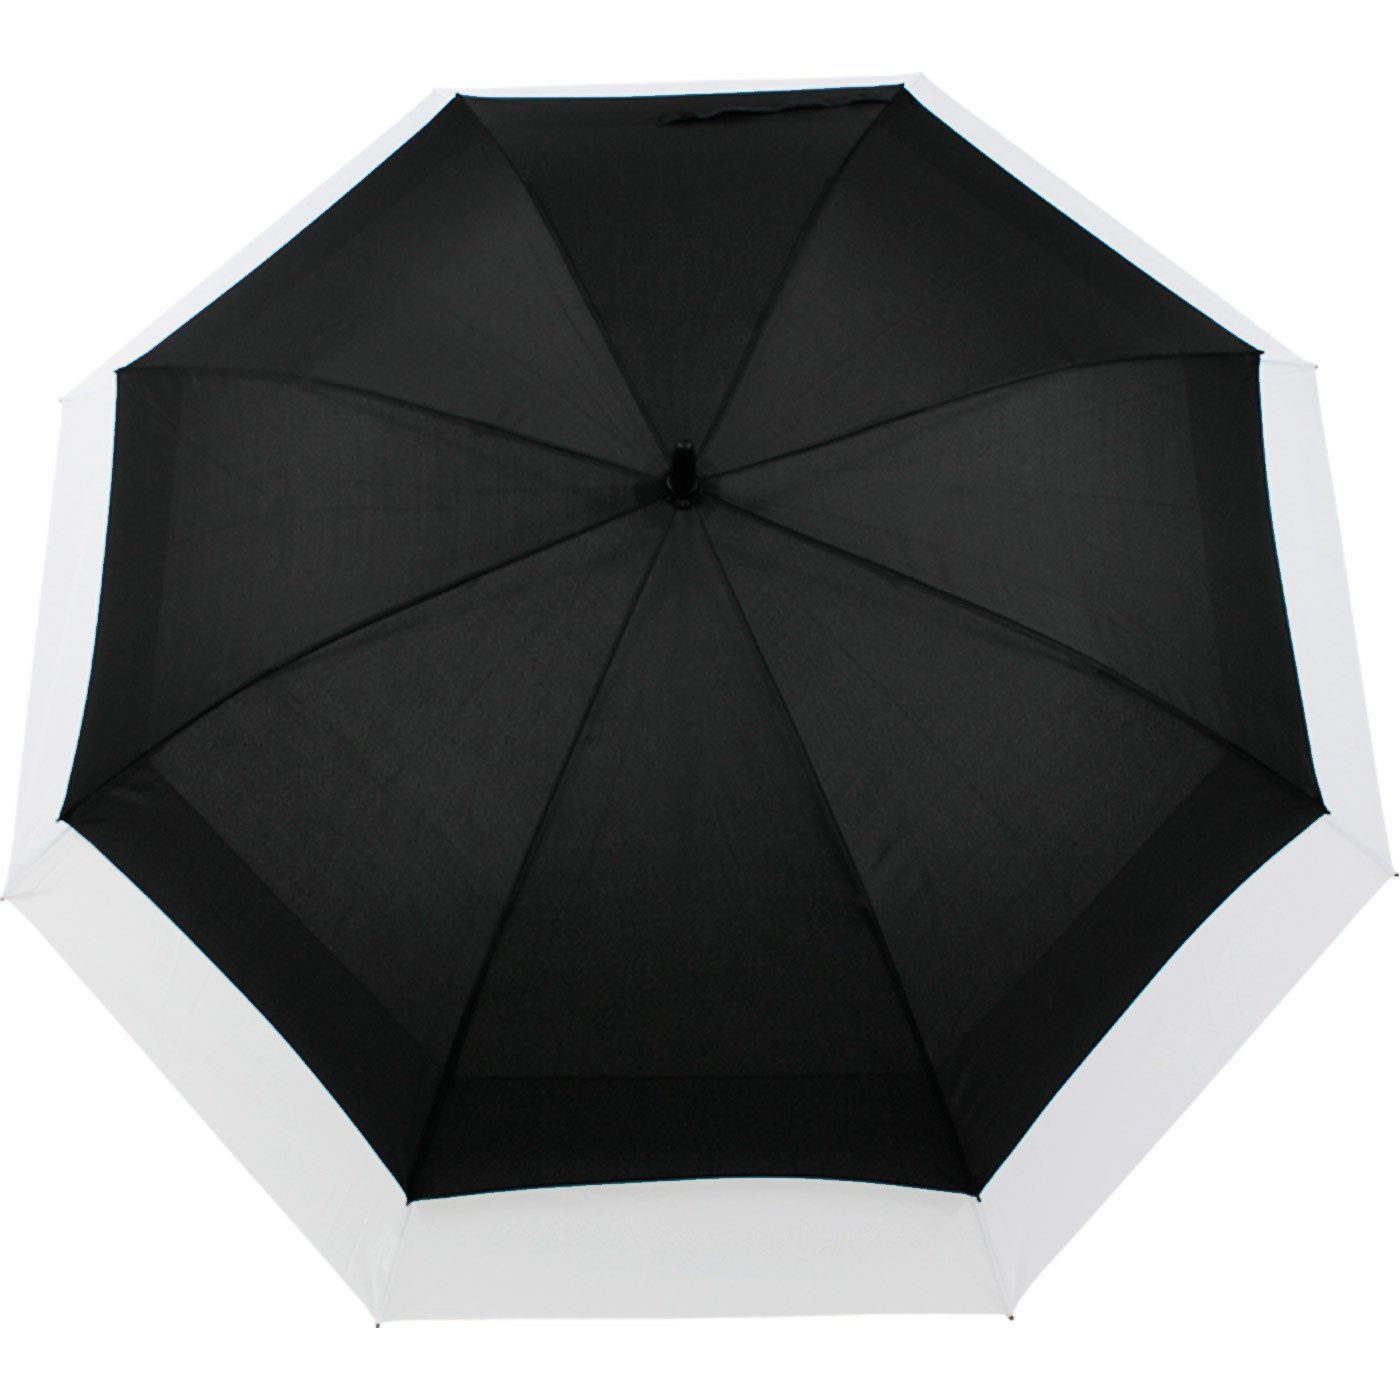 iX-brella Langregenschirm zweifarbig expandierender schwarz-weiß Schirm Move to mit Automatik, - XXL